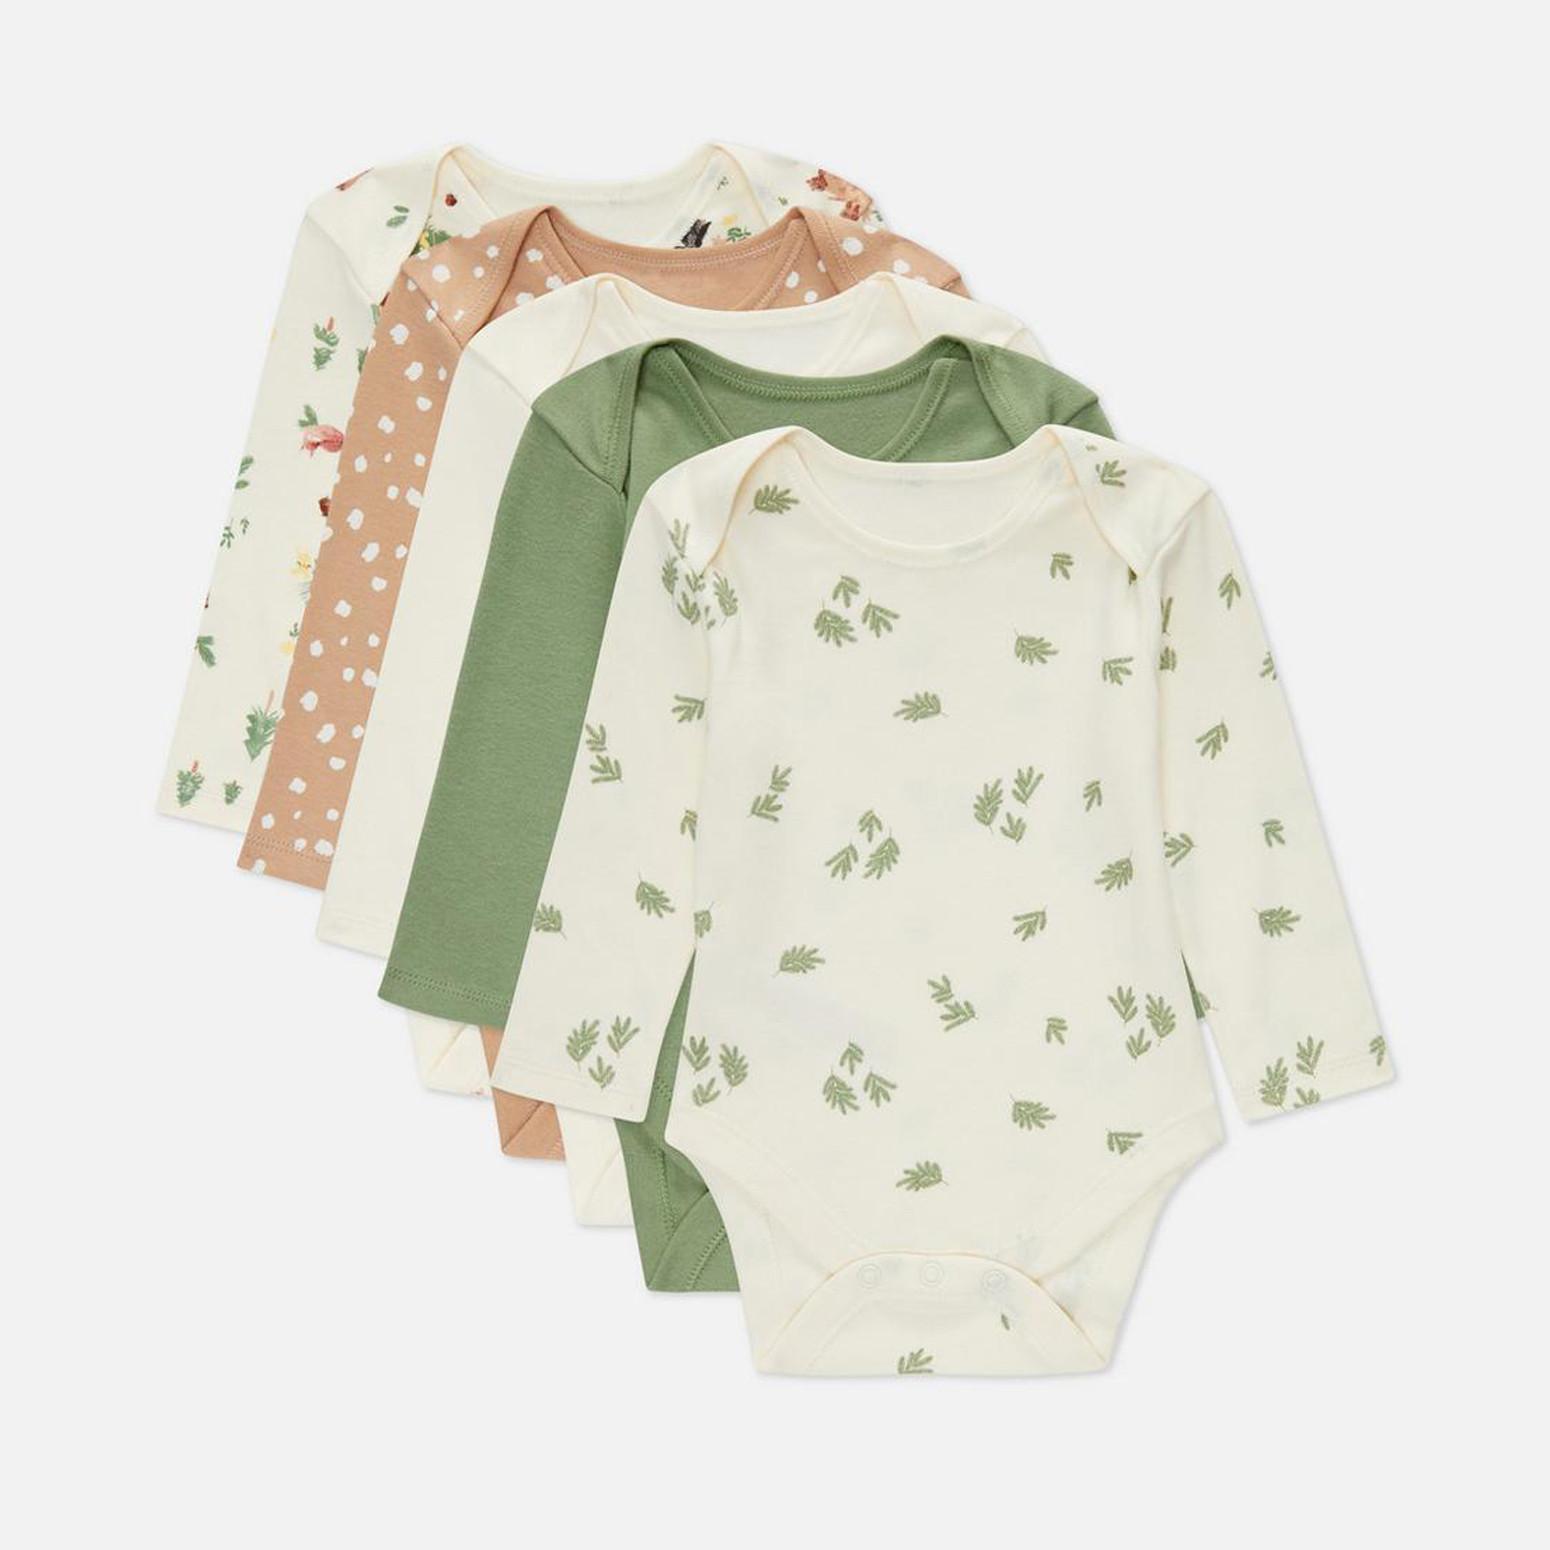 Bodis y camisetas sin mangas para bebé